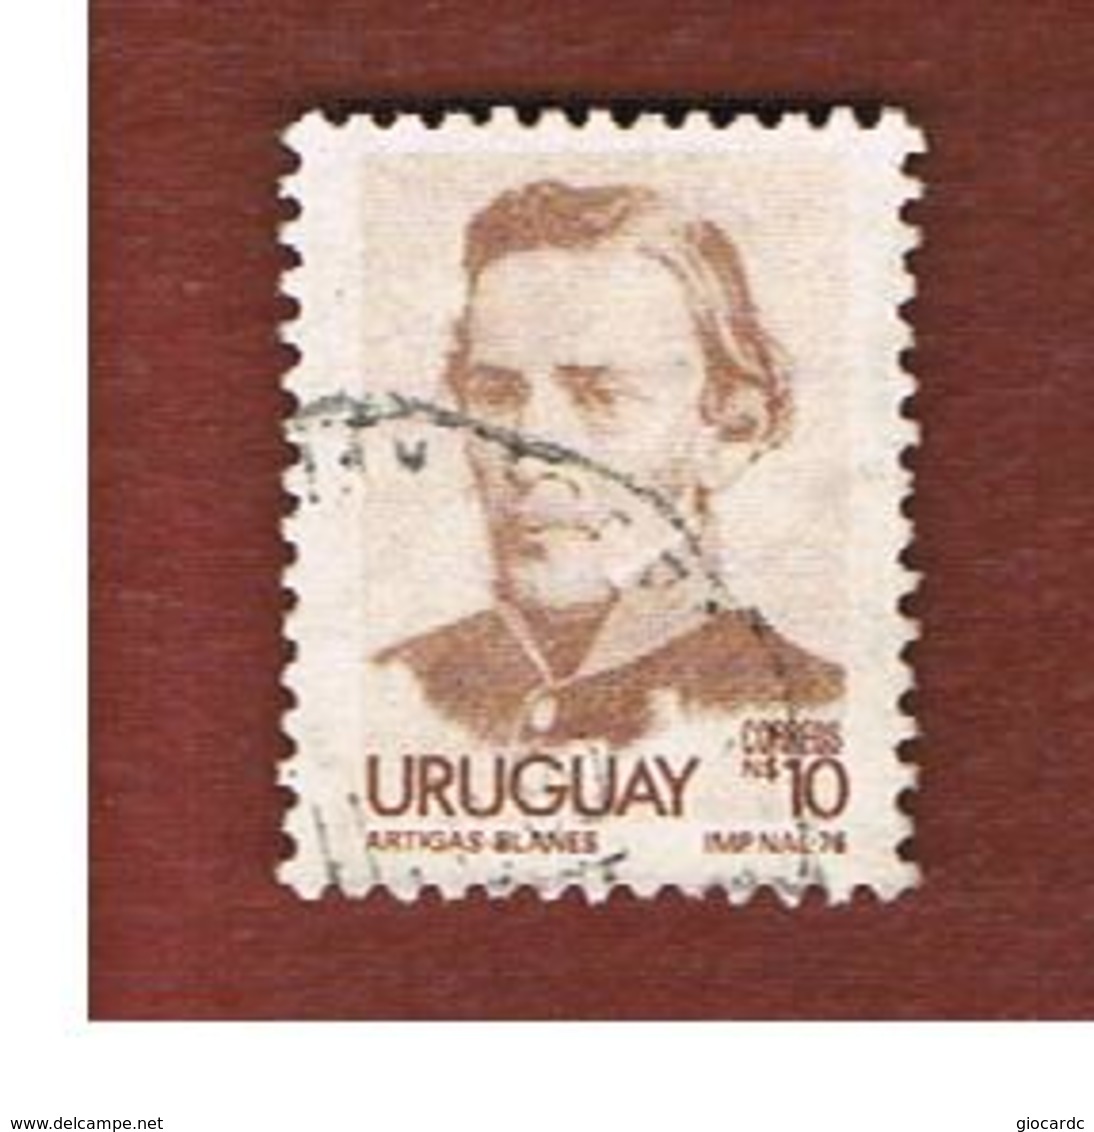 URUGUAY  - SG 1651a   - 1977 GENERAL ARTIGAS   -  USED° - Uruguay